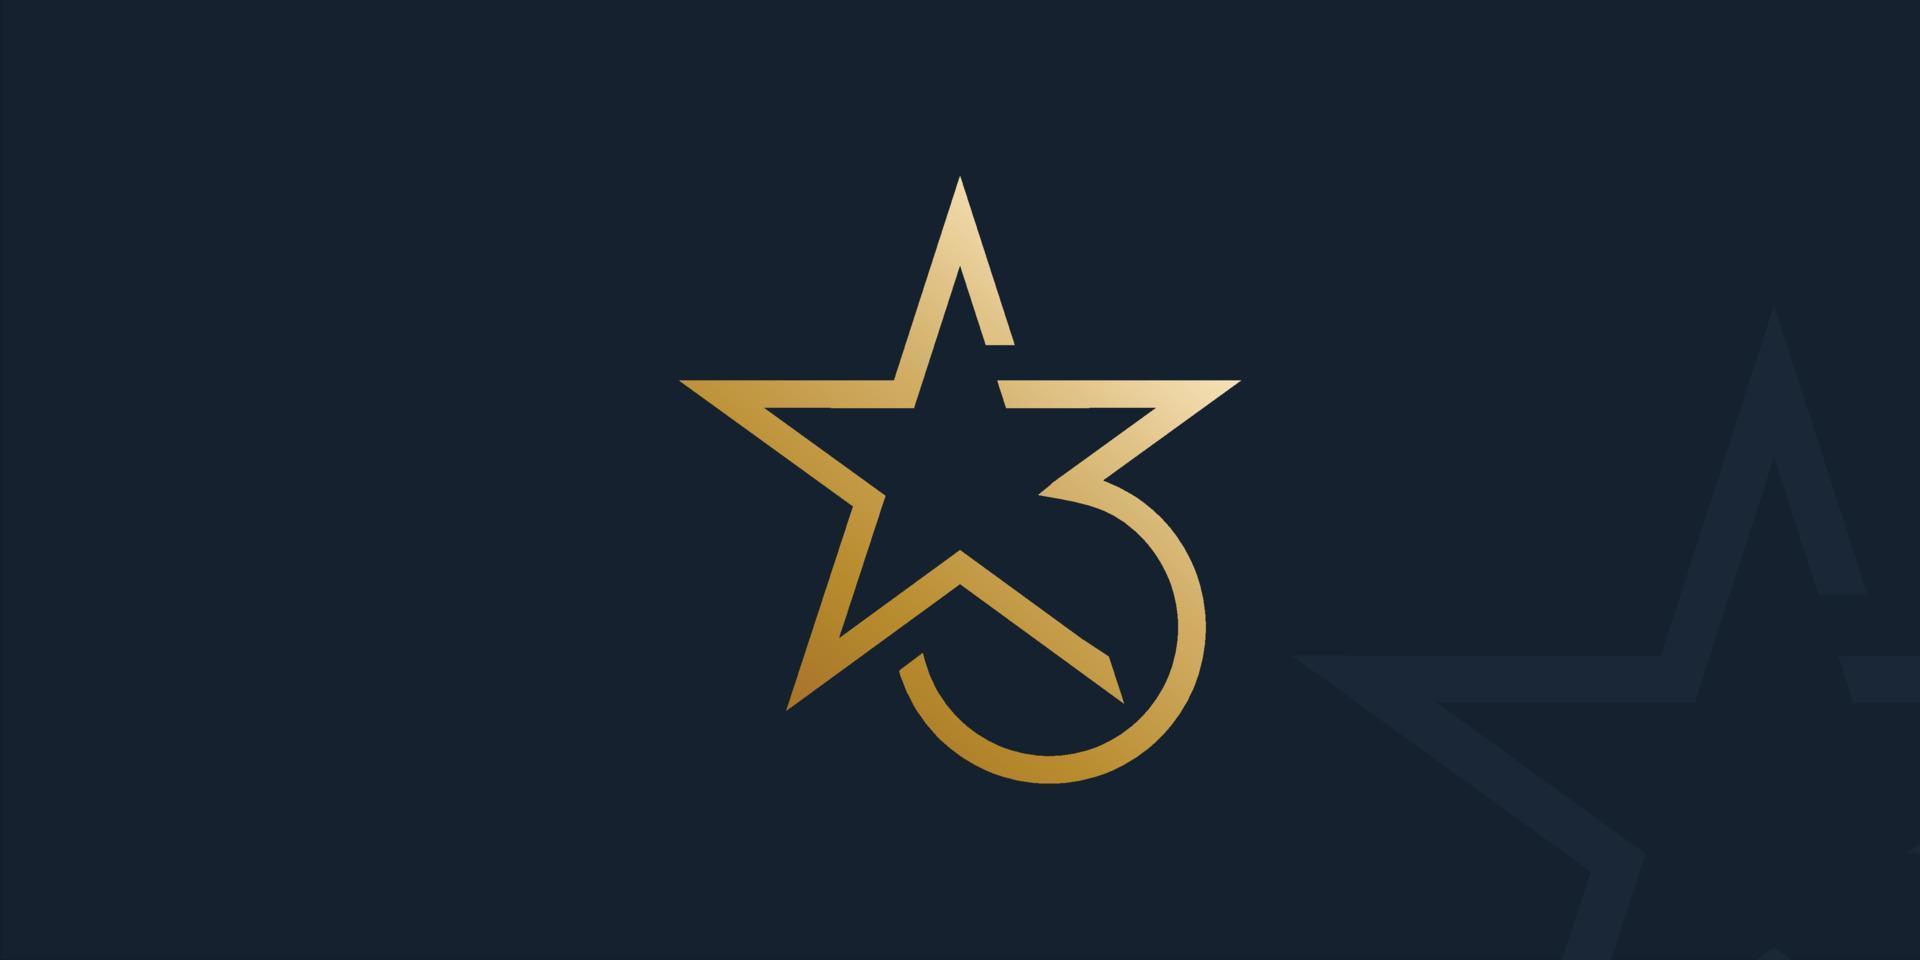 moderno y elegante 3 estrella logo vector